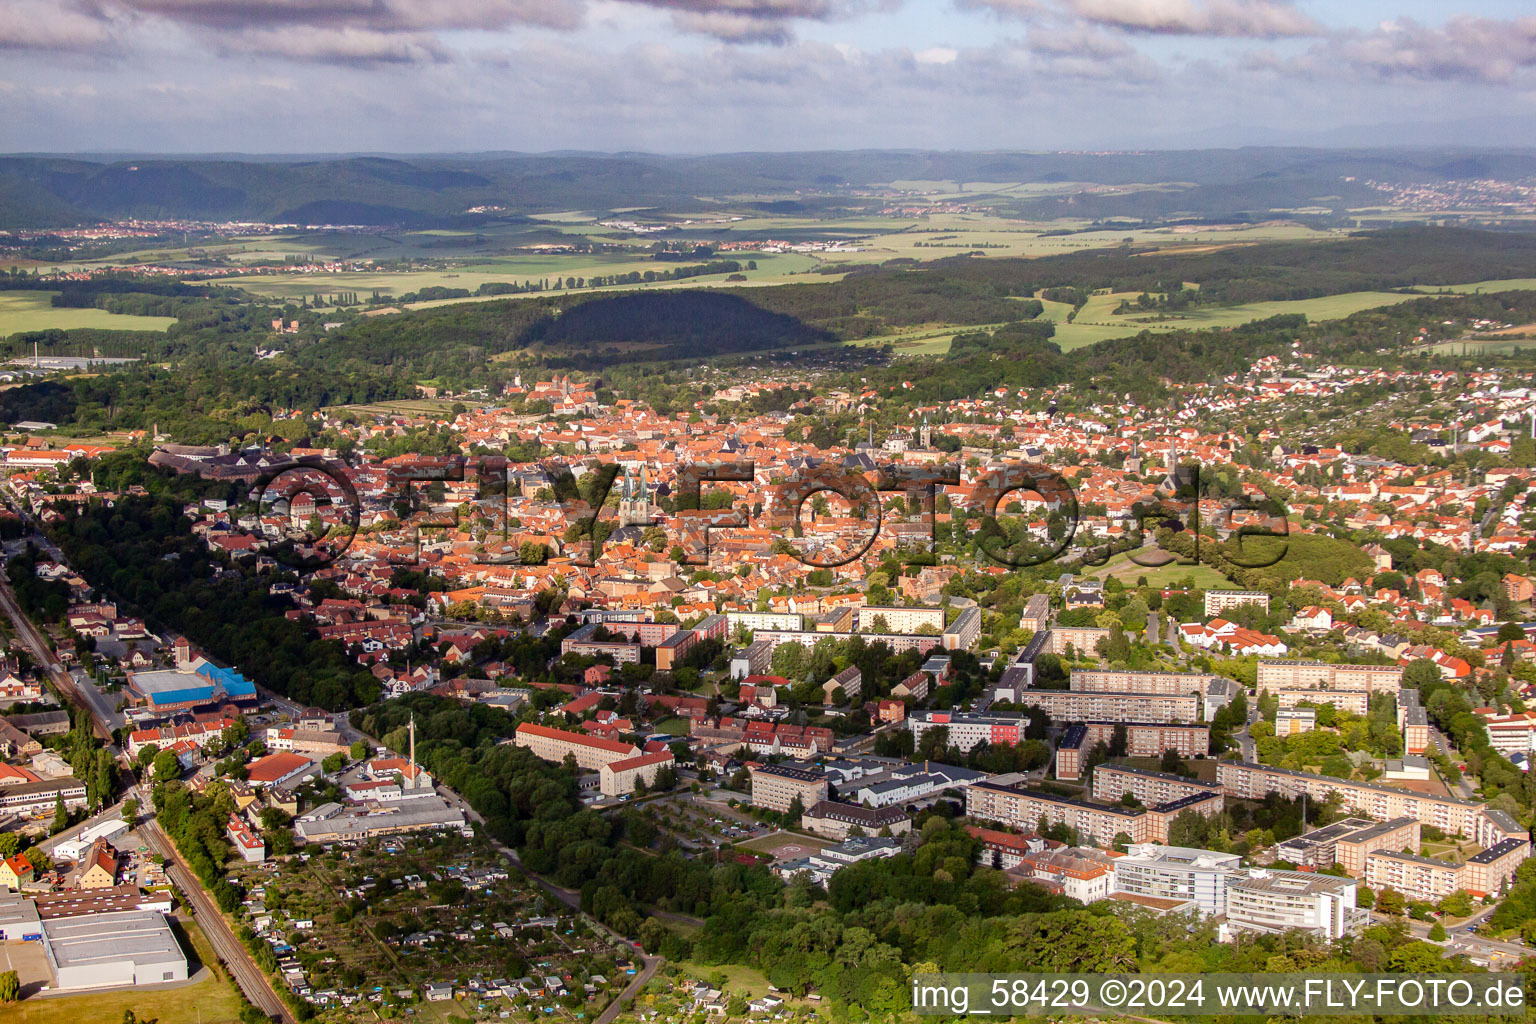 Luftbild von Stadtansicht vom Innenstadtbereich in Quedlinburg im Bundesland Sachsen-Anhalt, Deutschland